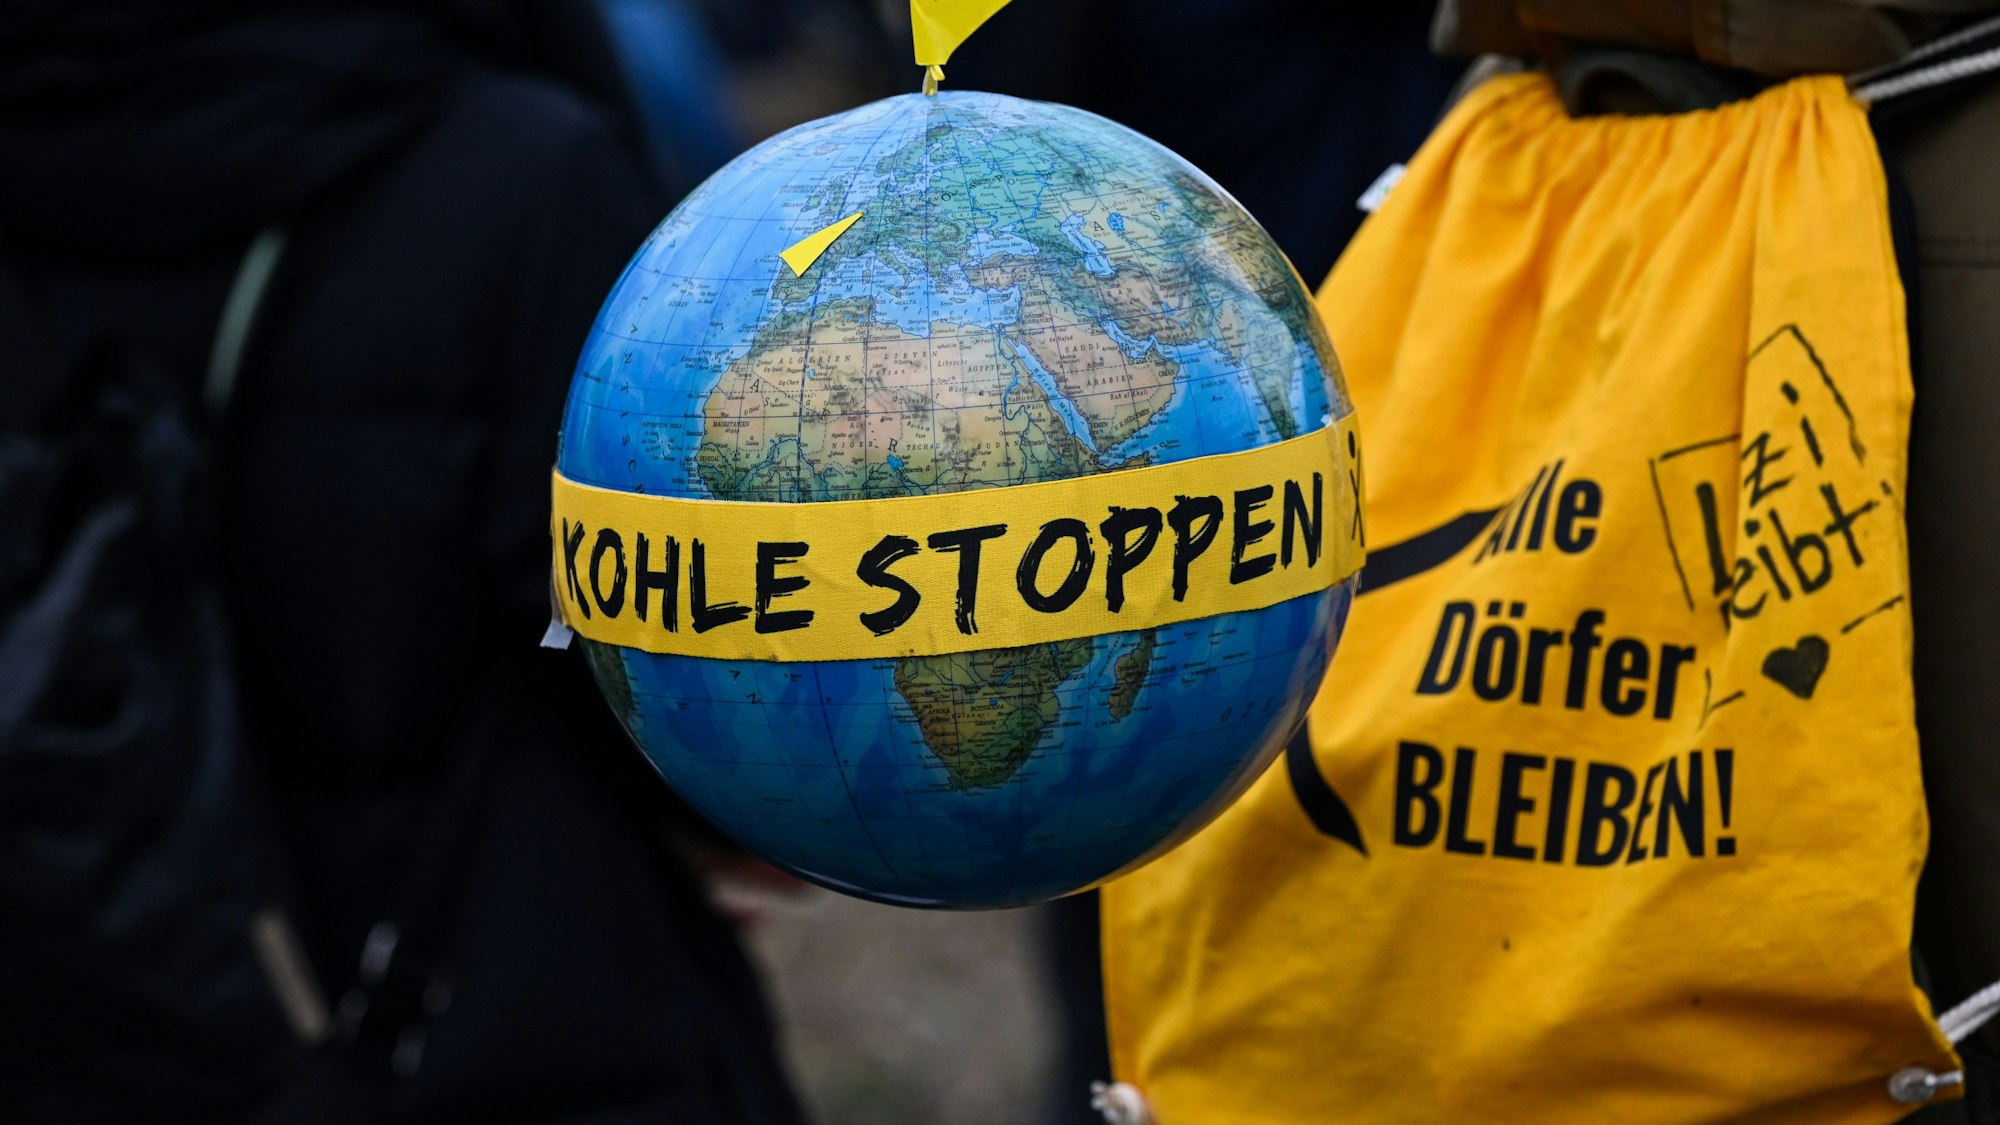 Ein Globus mit einem Fähnchen mit dem Ortsnamen "Lützerath" und dem Schriftzug "Kohle stoppen".